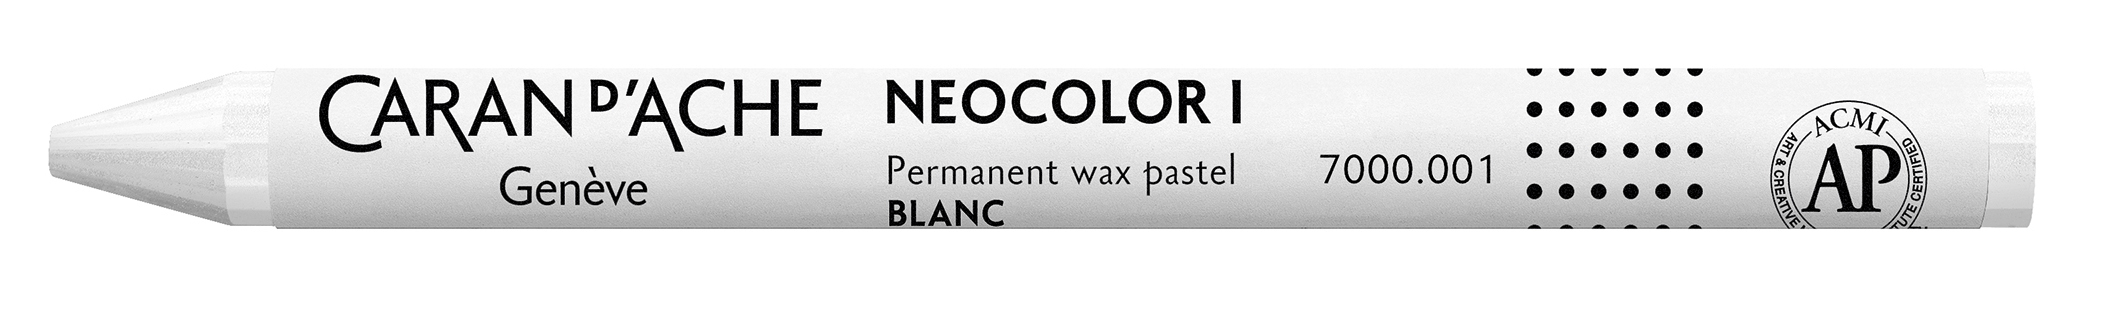 CARAN D'ACHE Crayons de cire Neocolor 1 7000.001 blanc blanc